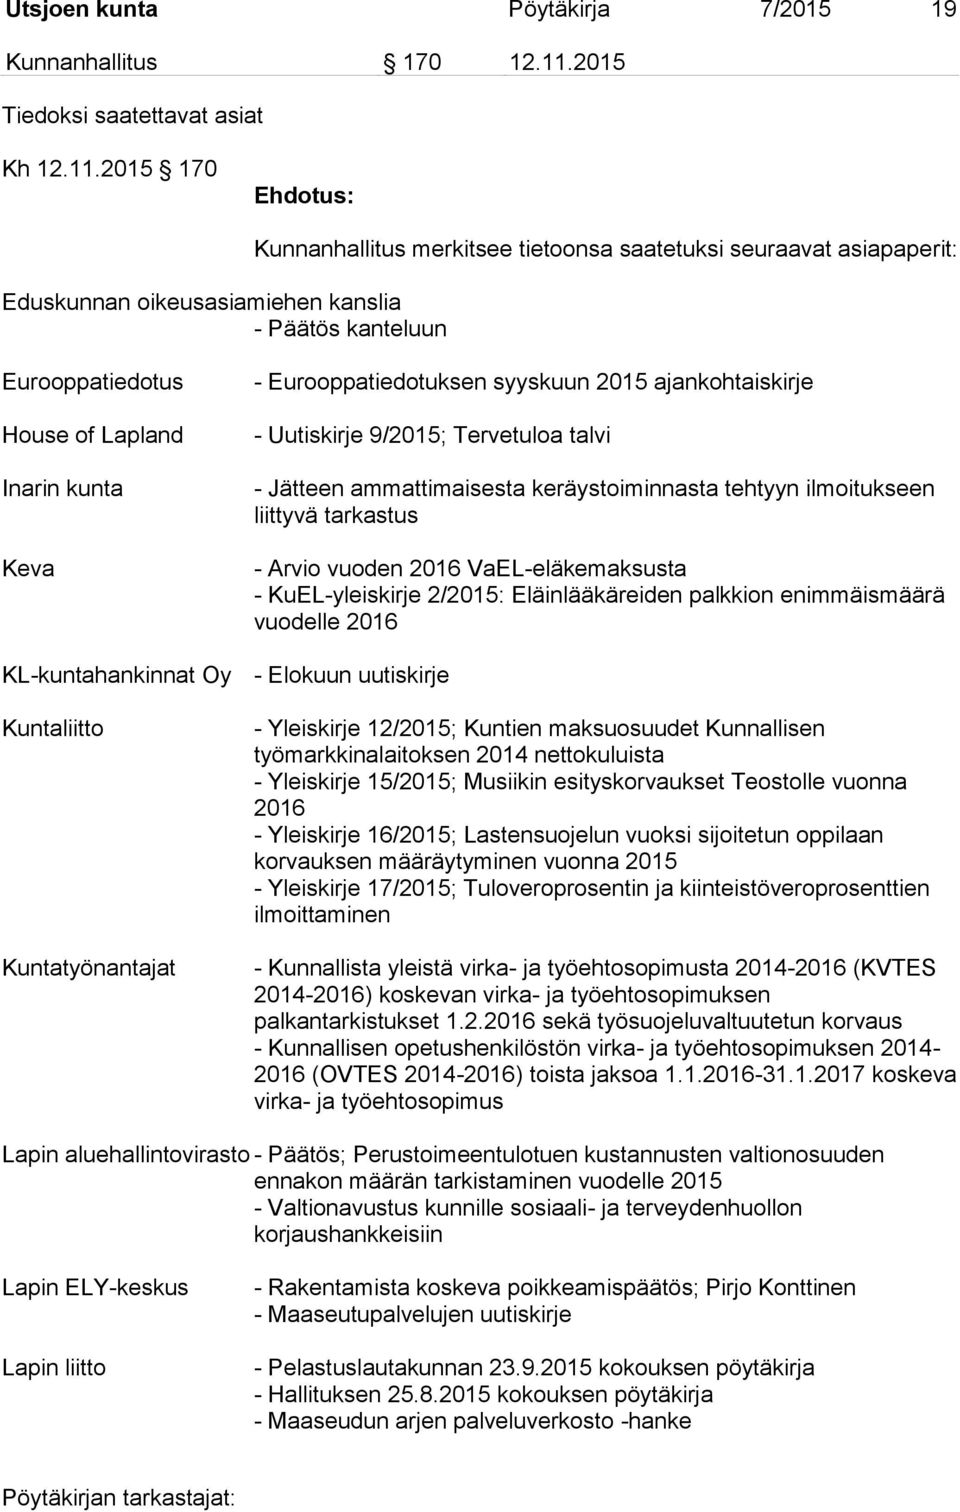 2015 170 Eduskunnan oikeusasiamiehen kanslia - Päätös kanteluun Kunnanhallitus merkitsee tietoonsa saatetuksi seuraavat asiapaperit: Eurooppatiedotus House of Lapland Inarin kunta Keva -